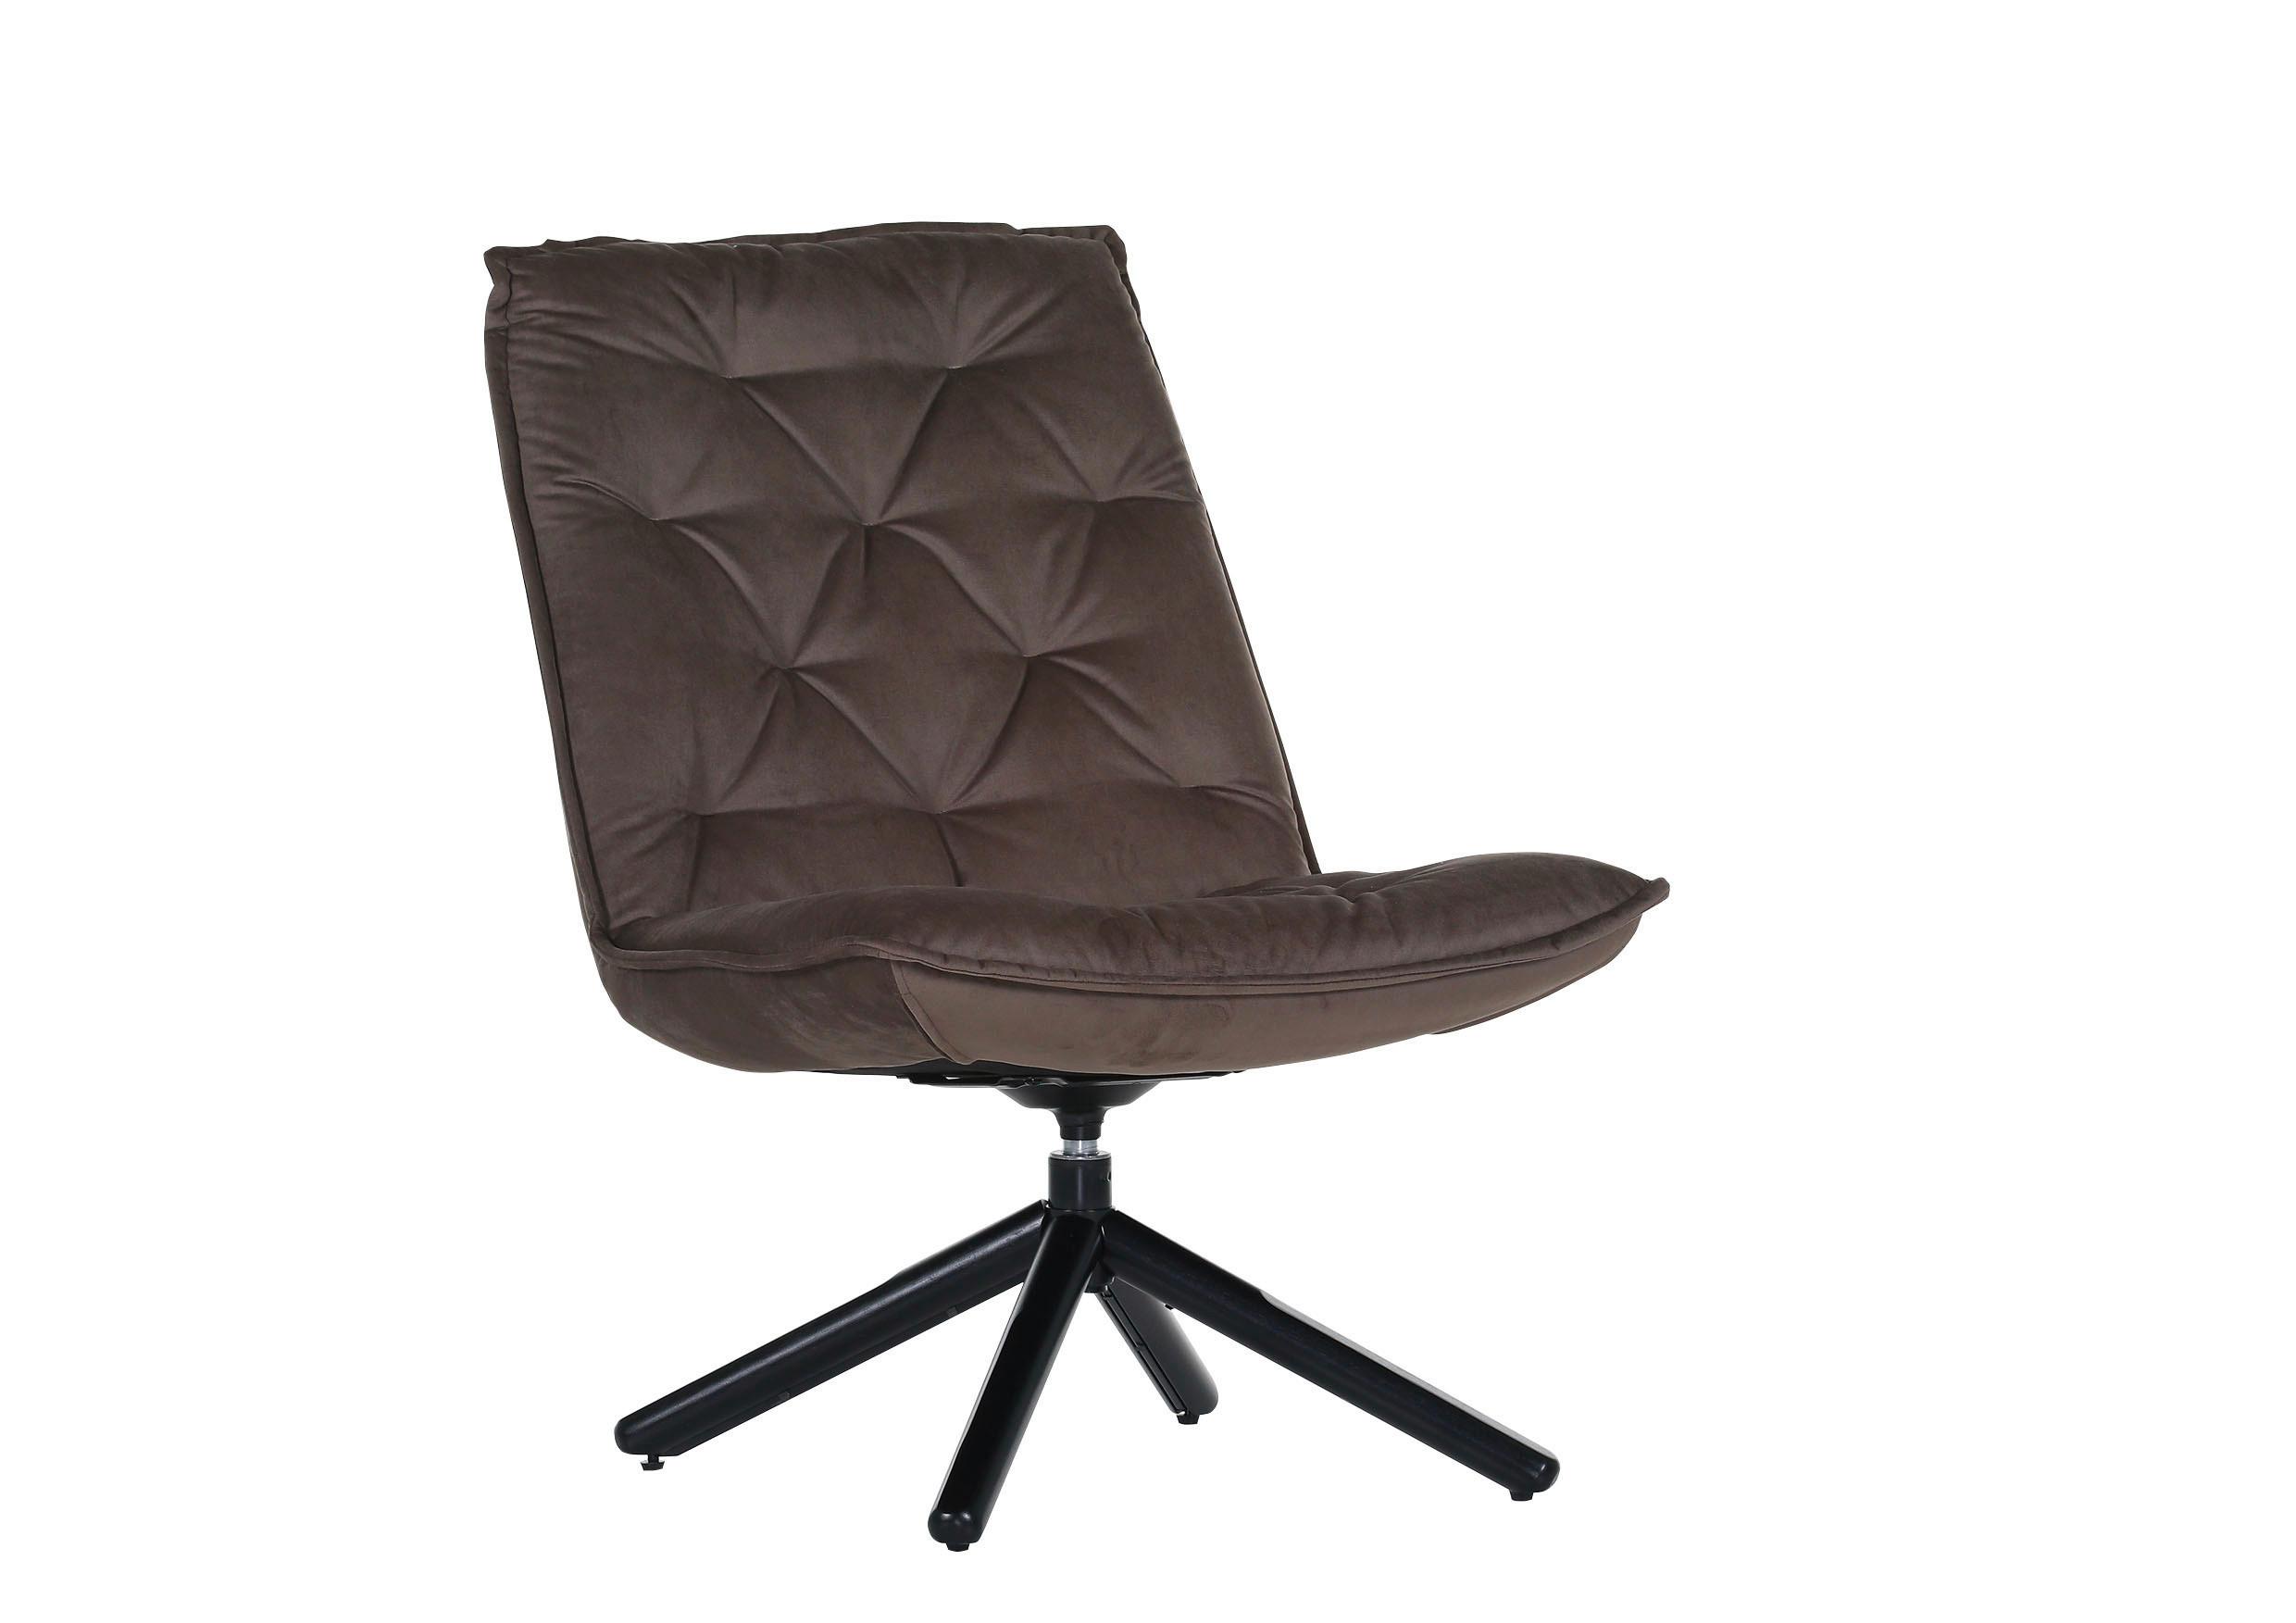 Fotelja Chill - smeđa/crna, Modern, tekstil/metal (70/96/80cm) - Modern Living